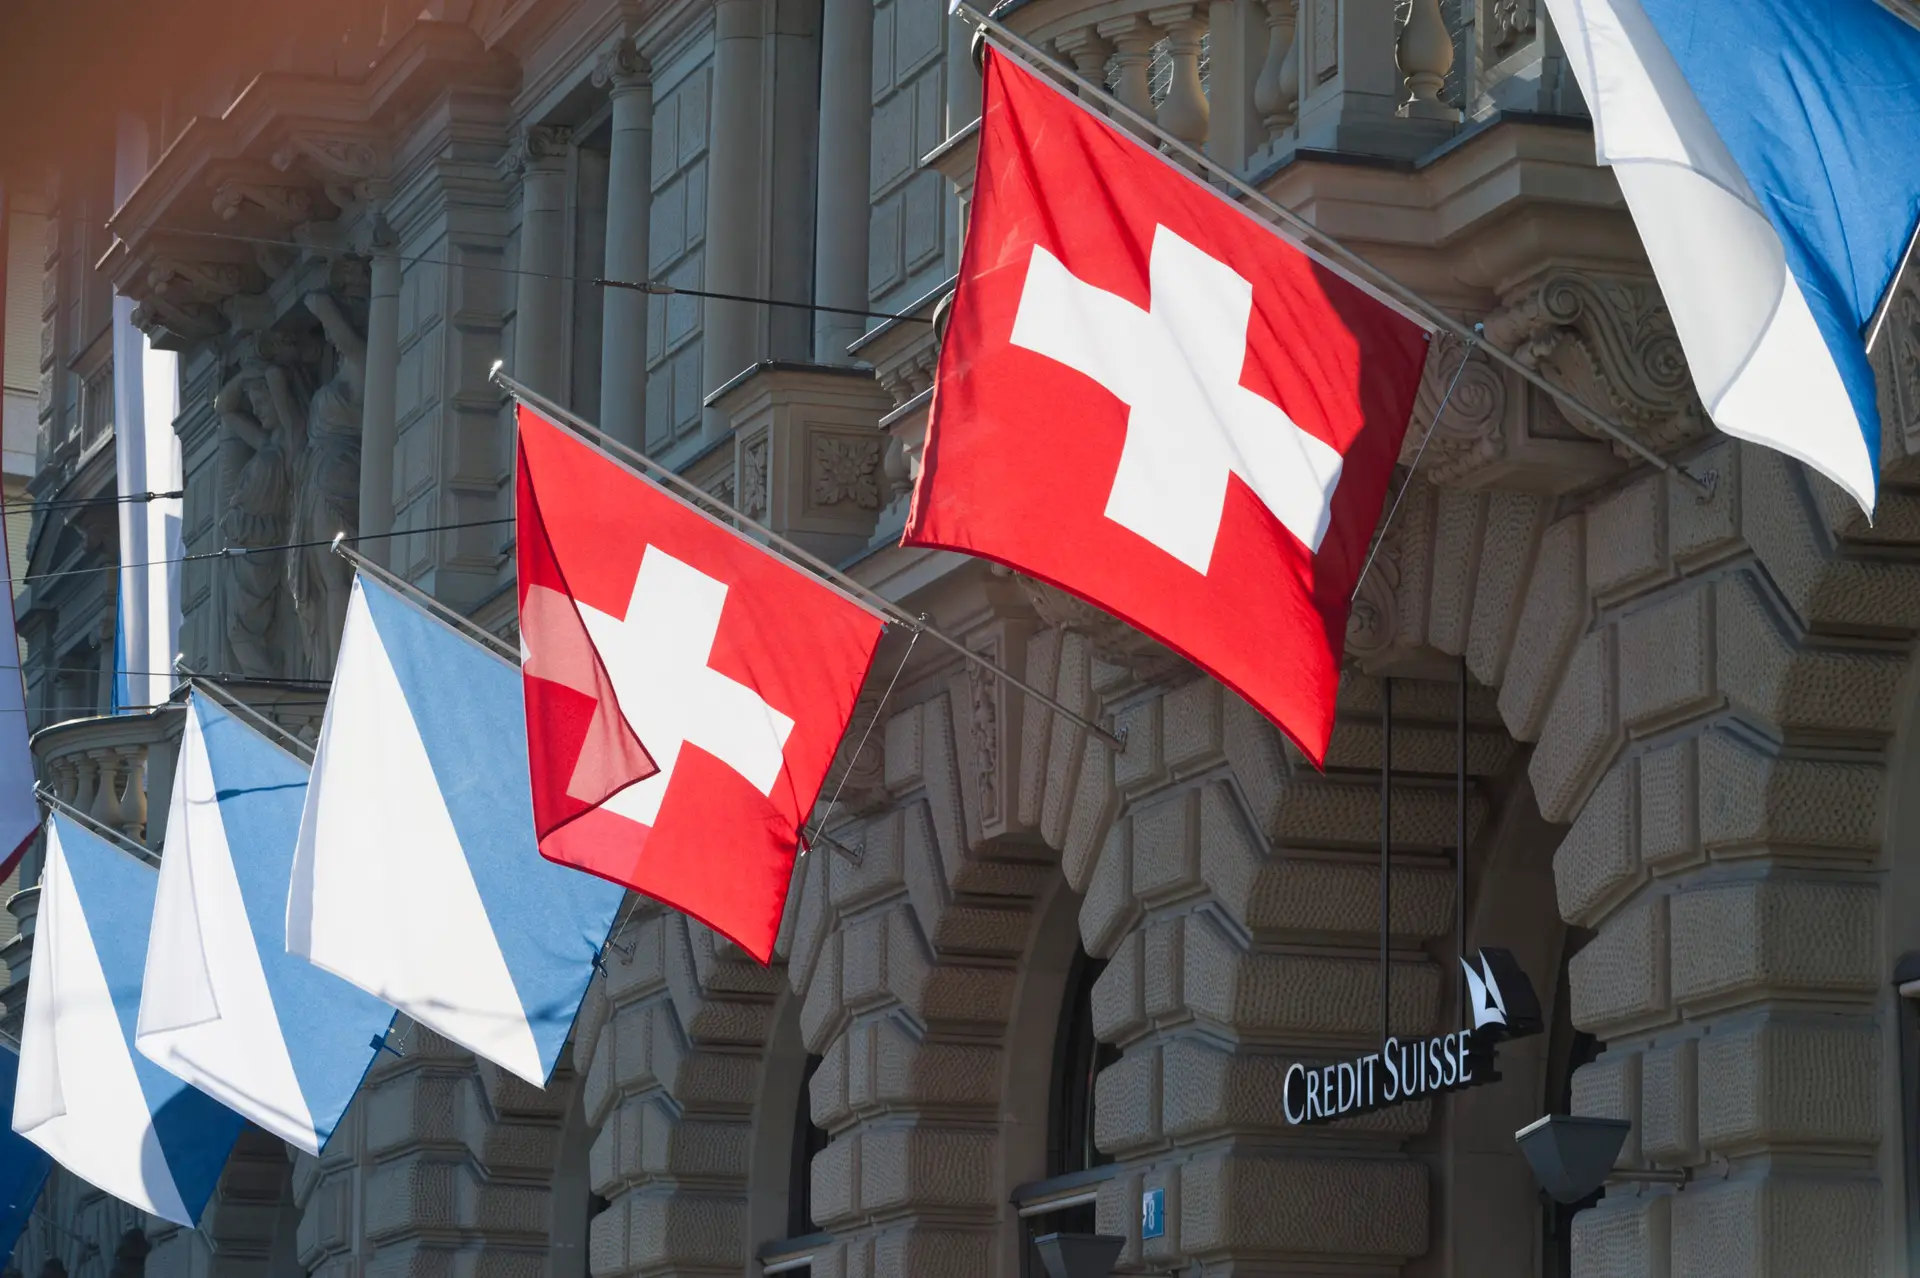 “Insano” e bizarro”: decisão sobre dívida do Credit Suisse está a assustar a União Europeia